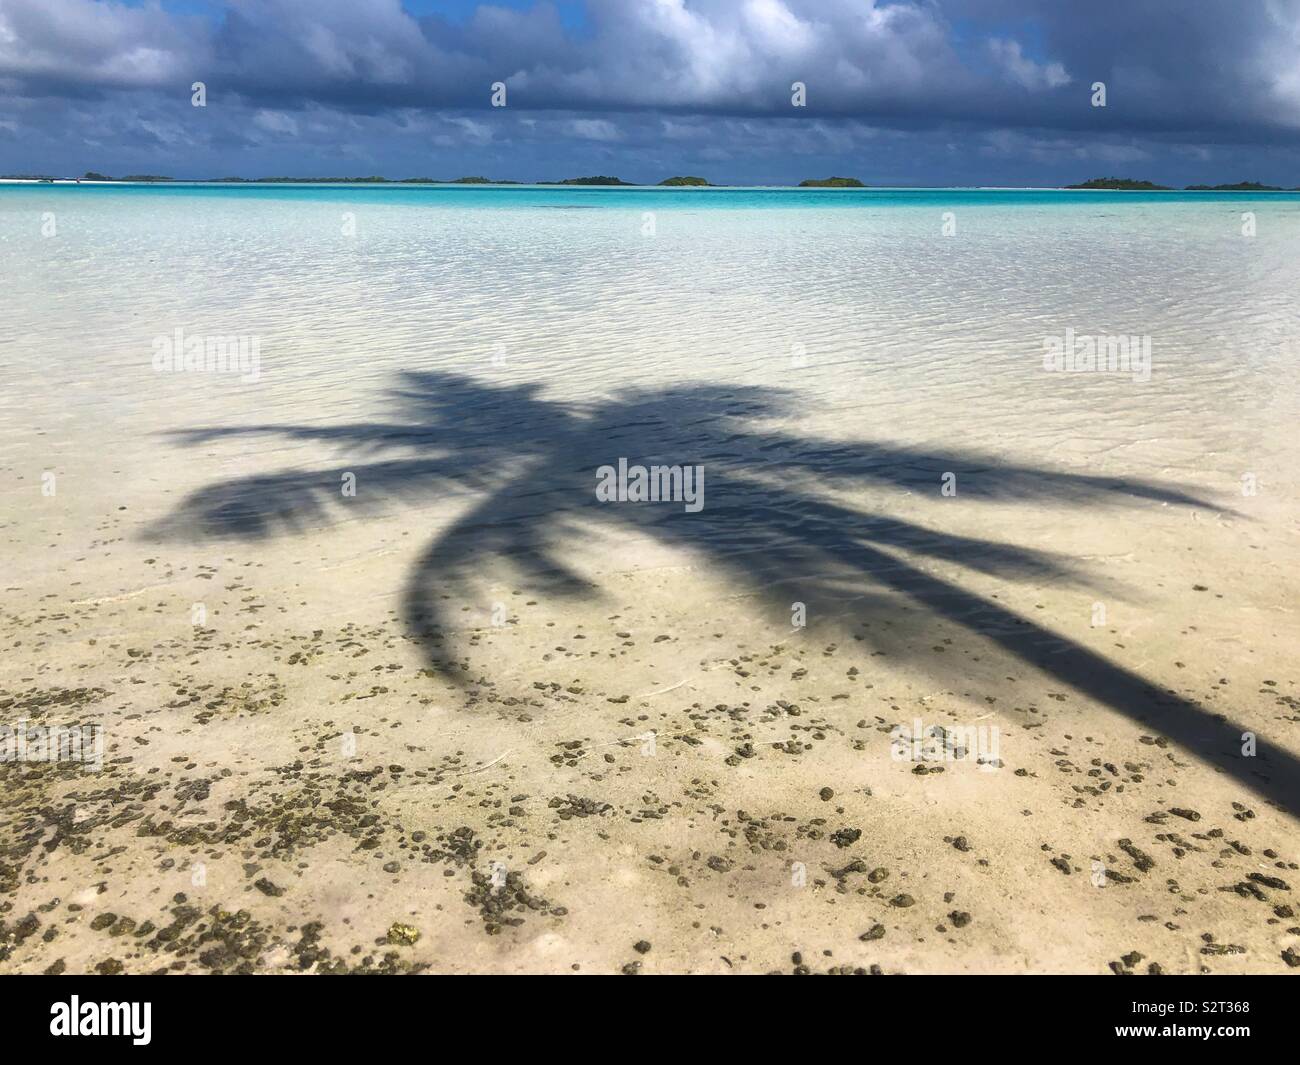 L'ombra di una palma da cocco di albero in acque poco profonde della laguna blu, Rangiroa Atoll, Tuamotus isole, (Arcipelago Tuamotu), Polinesia francese. Foto Stock